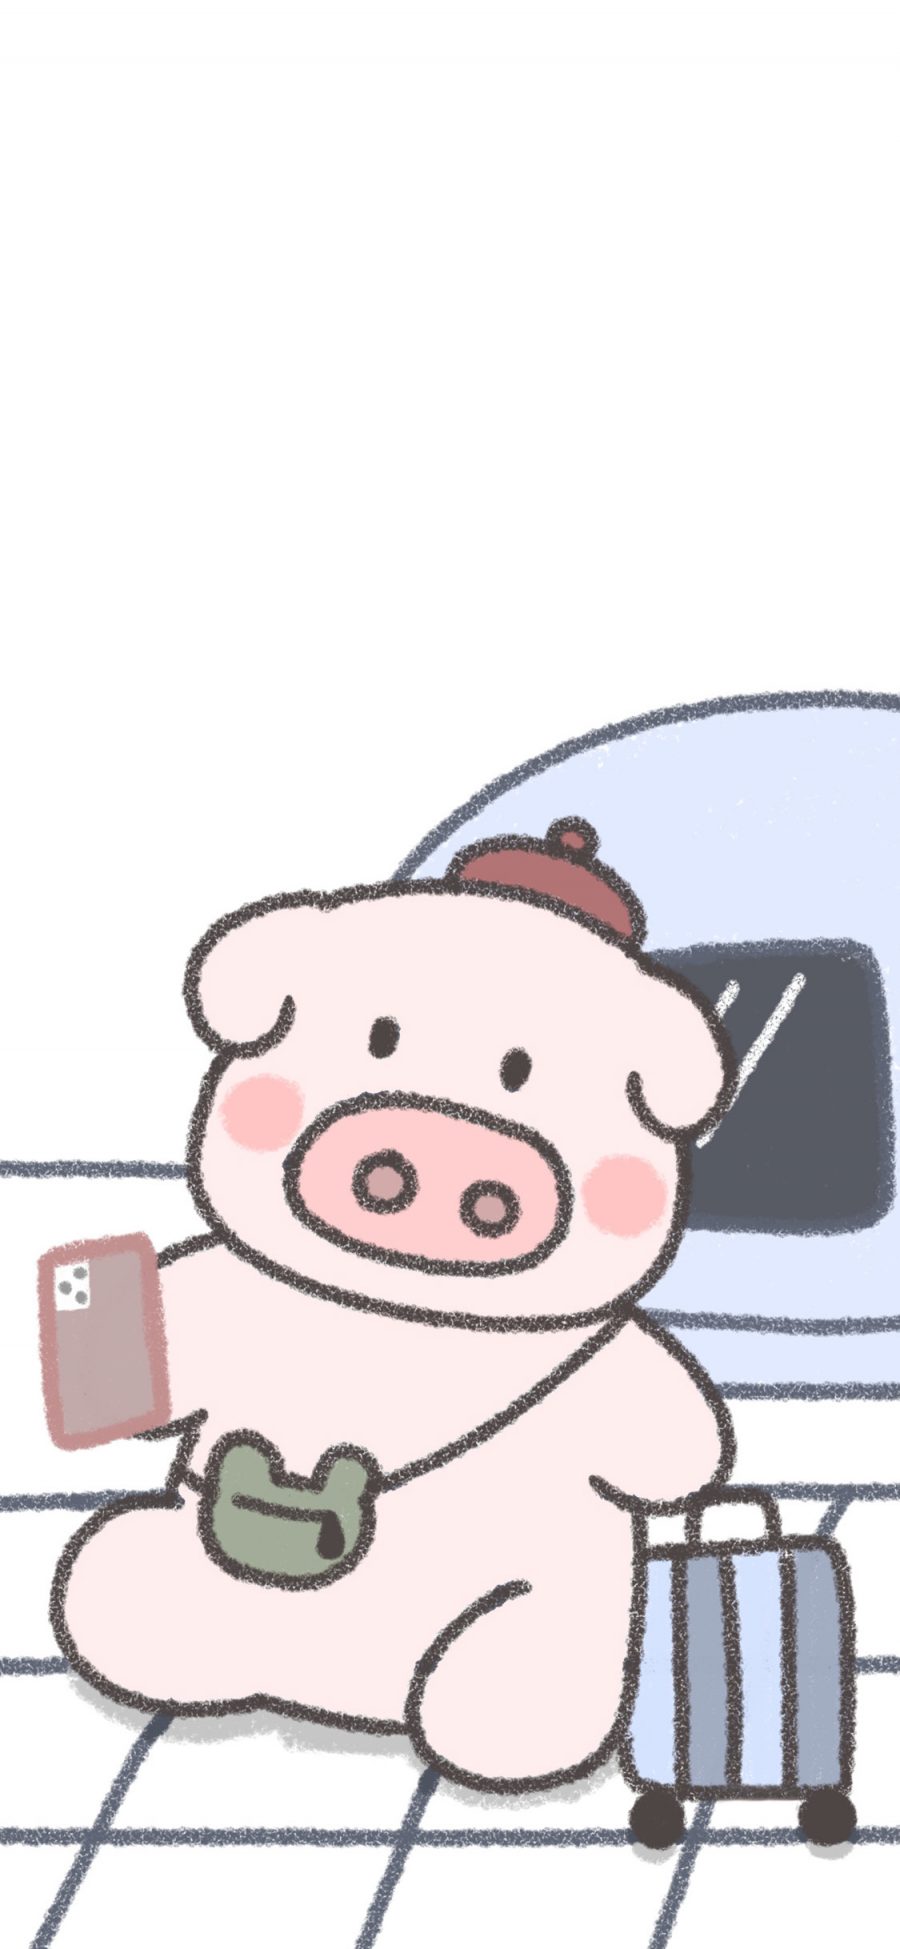 [2436×1125]卡通 小猪 简笔 可爱 苹果手机动漫壁纸图片